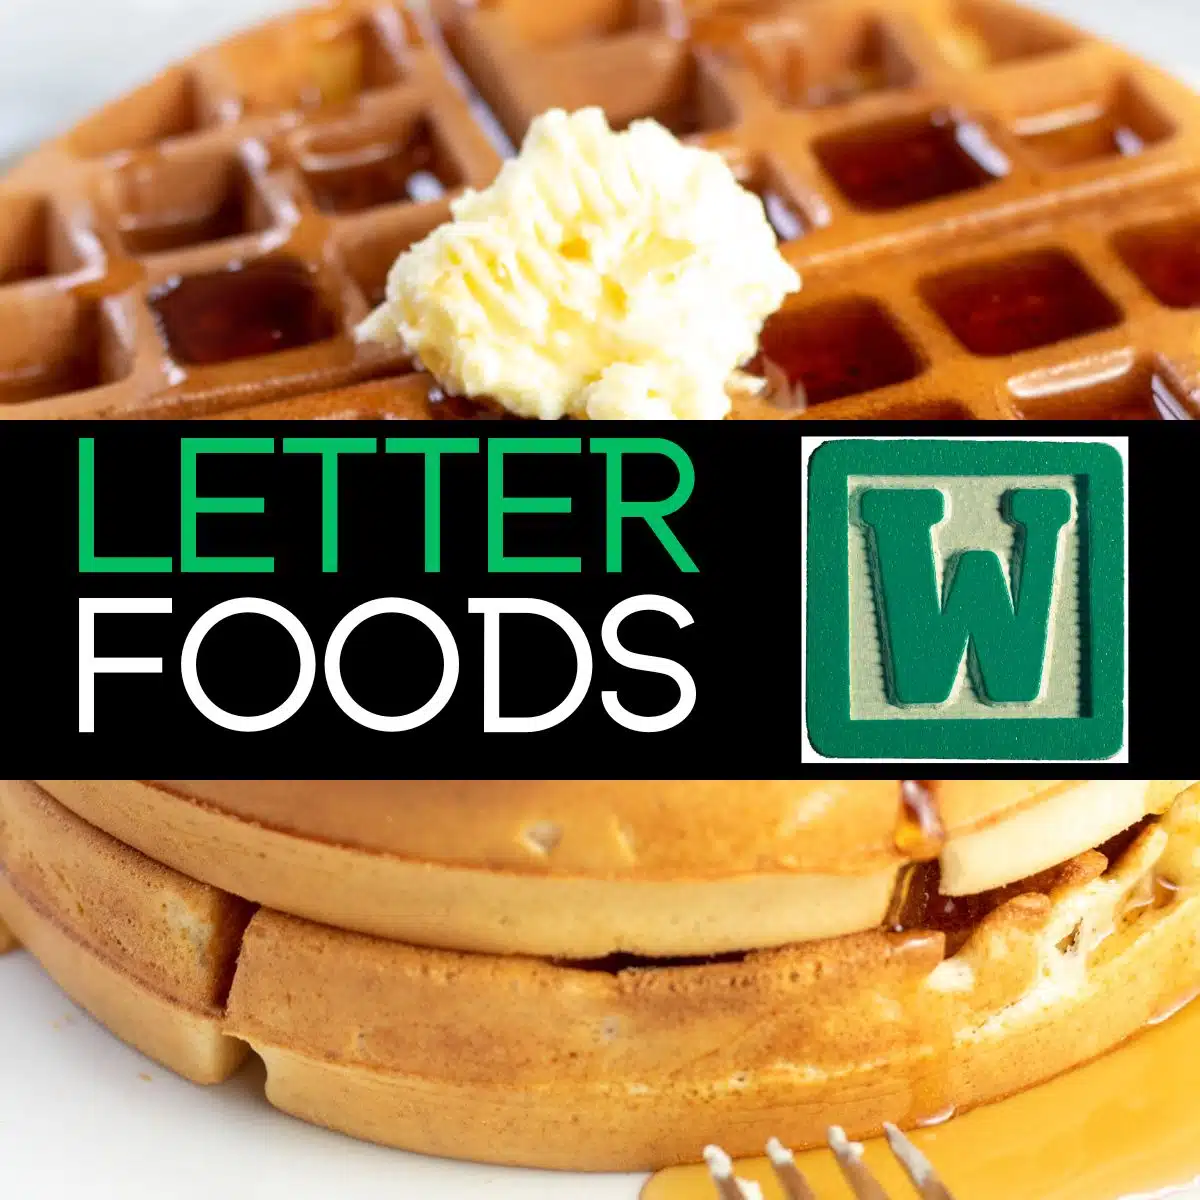 Kvadratna slika s tekstom za hranu koja počinje slovom w, s vaflima na fotografiji.